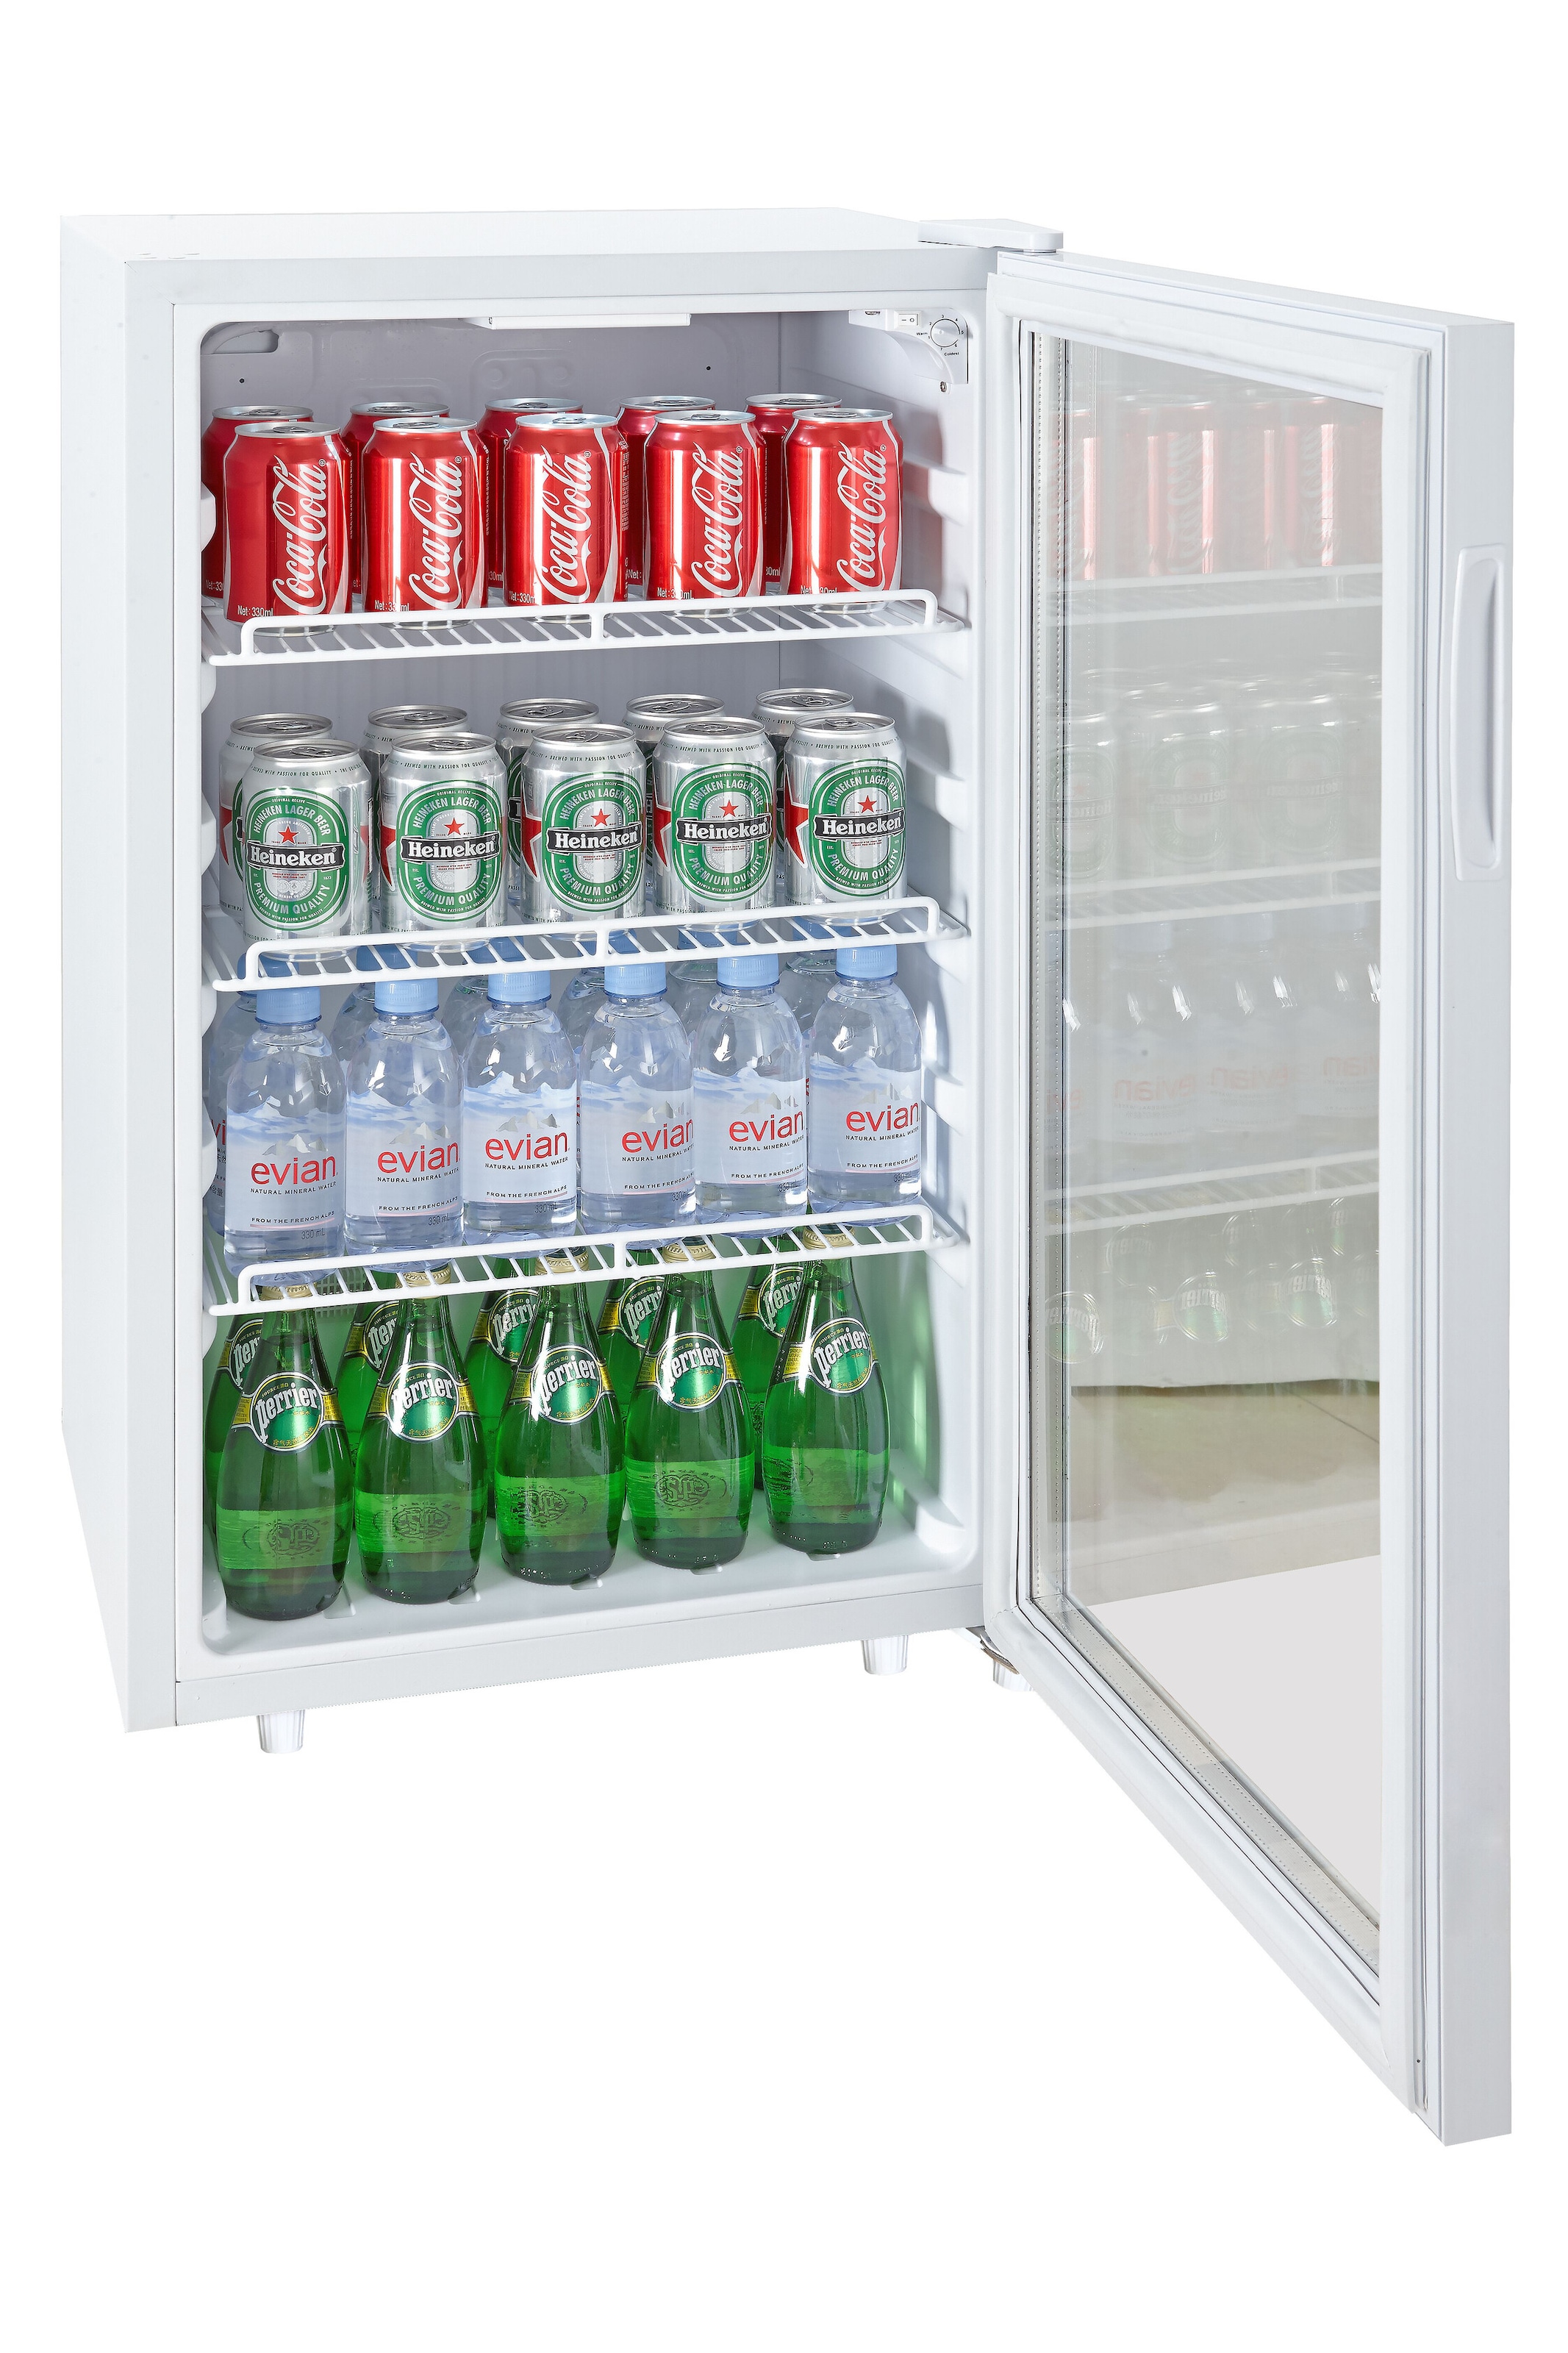 Silva Homeline Getränkekühlschrank, G-KS 1695, 85,2 cm hoch, 48 cm breit, Platz für 70 Dosen oder 44 Bierflaschen